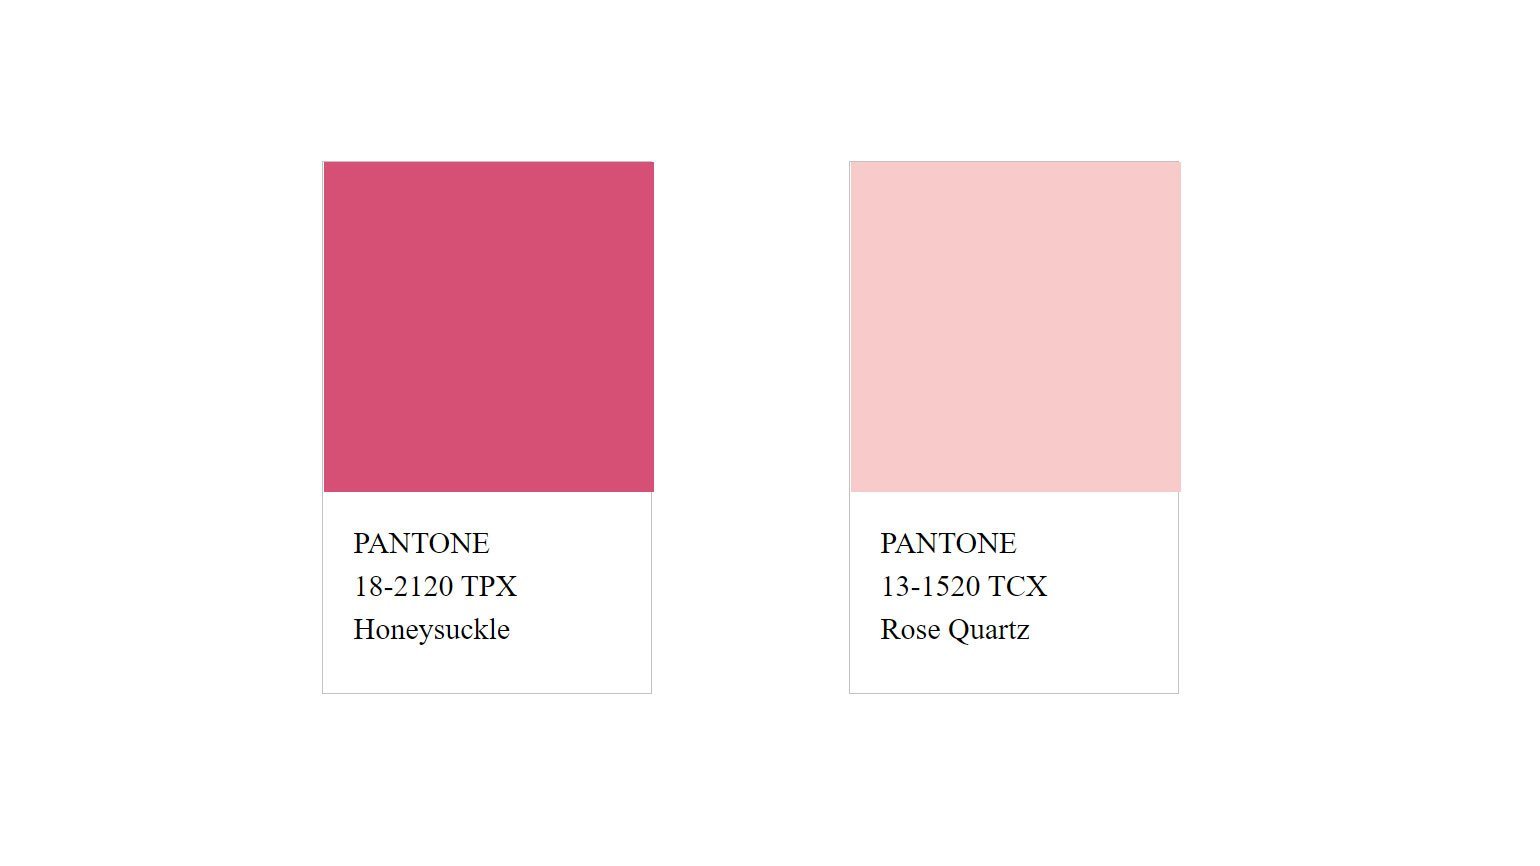 Психология и значения розового цвета на примере известных брендов /Skillbox Media